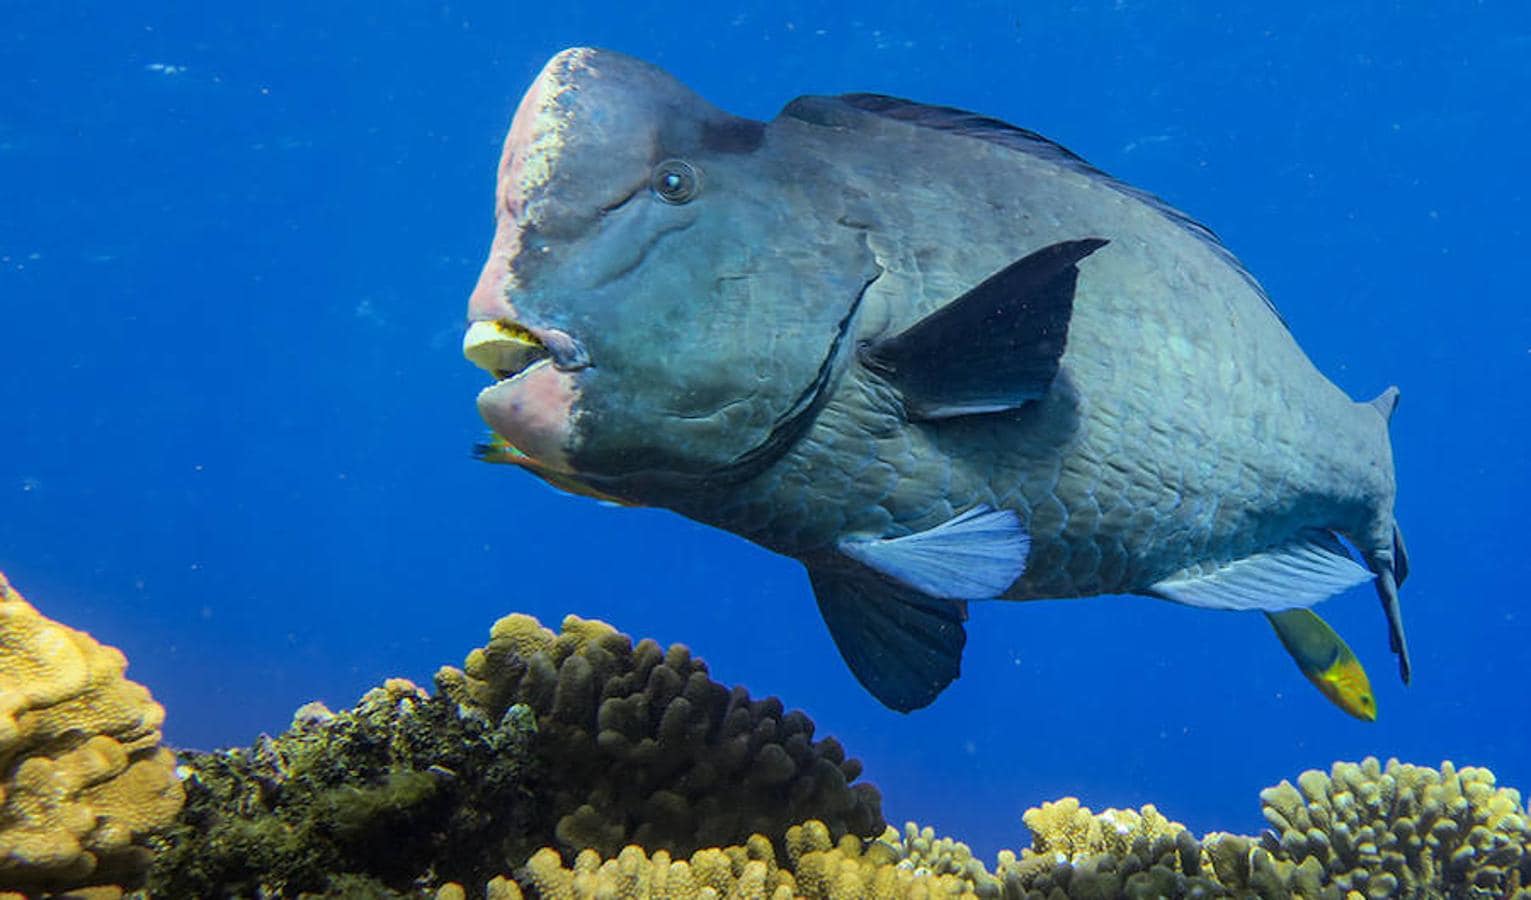 Un viaje por los corales del Pacífico en diez increíbles fotos. El loro cototo verde es un pez increíble que puede vivir hasta los 40 años, creciendo hasta los 120 centímetros de largo y los 45 kilos de peso. Es el más grande de todos los peces loro, y es de color gris pizarra, verde oliva o azul, con la cabeza de color rosa o amarillento. Su característica más distintiva y la razón de su nombre común, es la protuberancia bulbosa en la frente que desarrollan los adultos, que utilizan para embestir el coral y dividirlo en partes más pequeñas y fáciles de digerir.